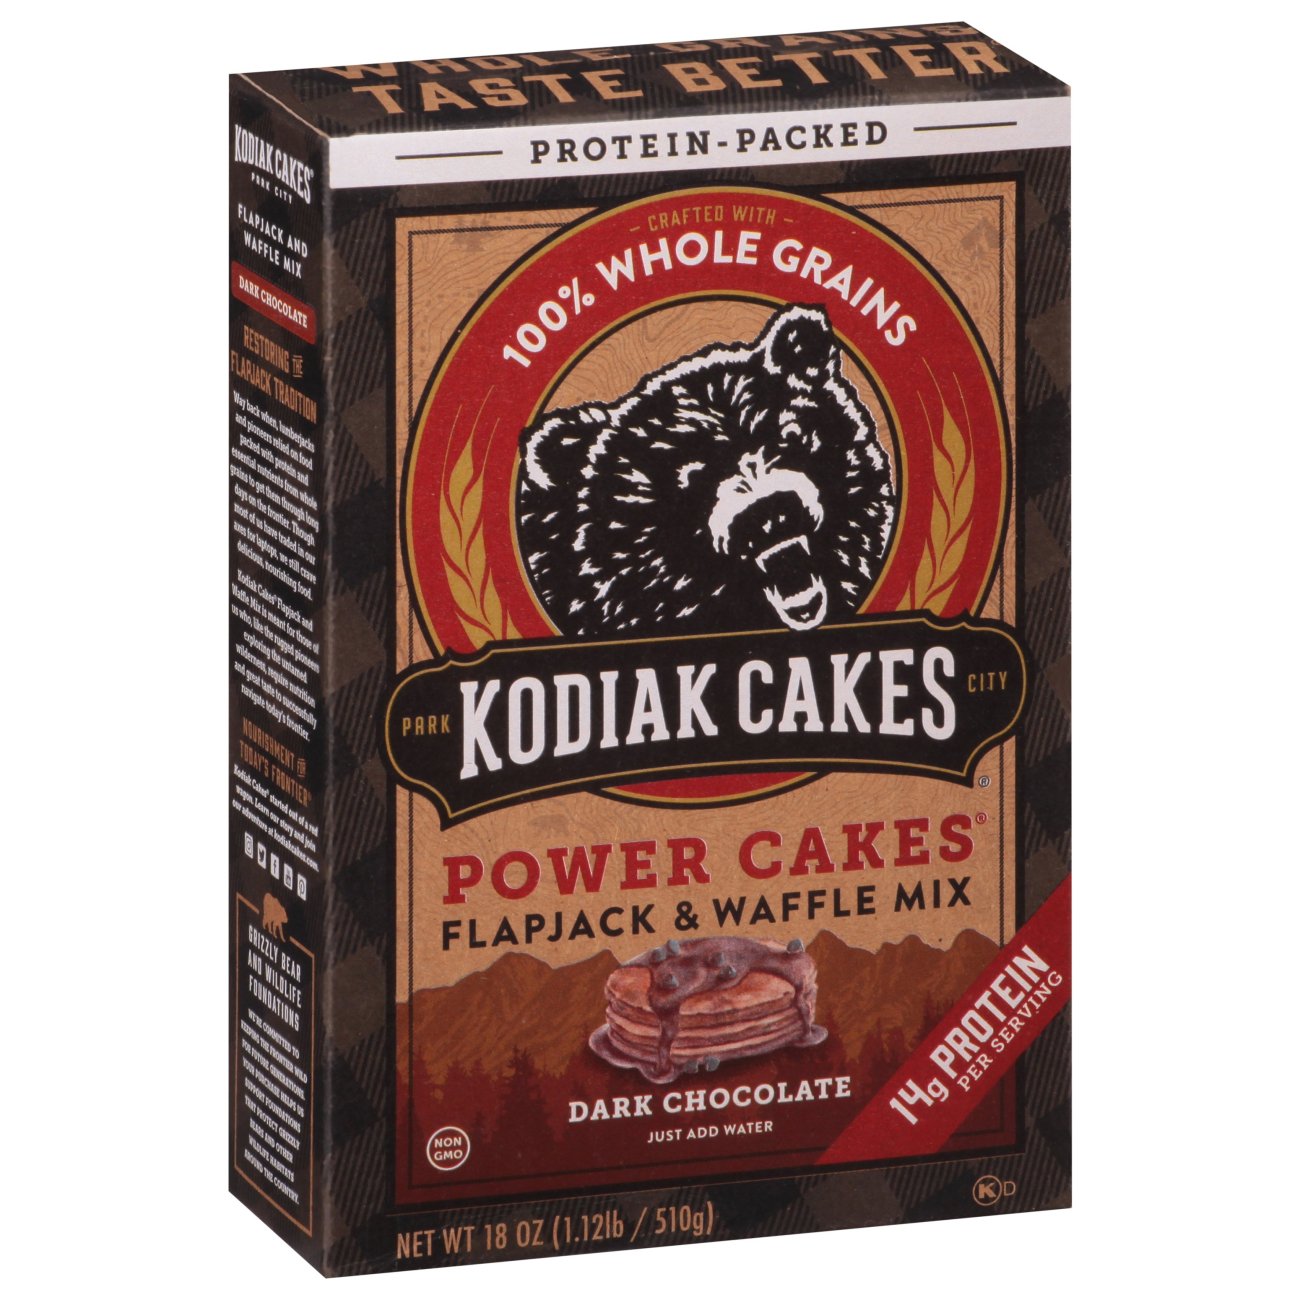 Kodiak Cakes Power Cakes Flapjack & Waffle Mix - Dark Chocolate - Shop  Pancake Mixes at H-E-B